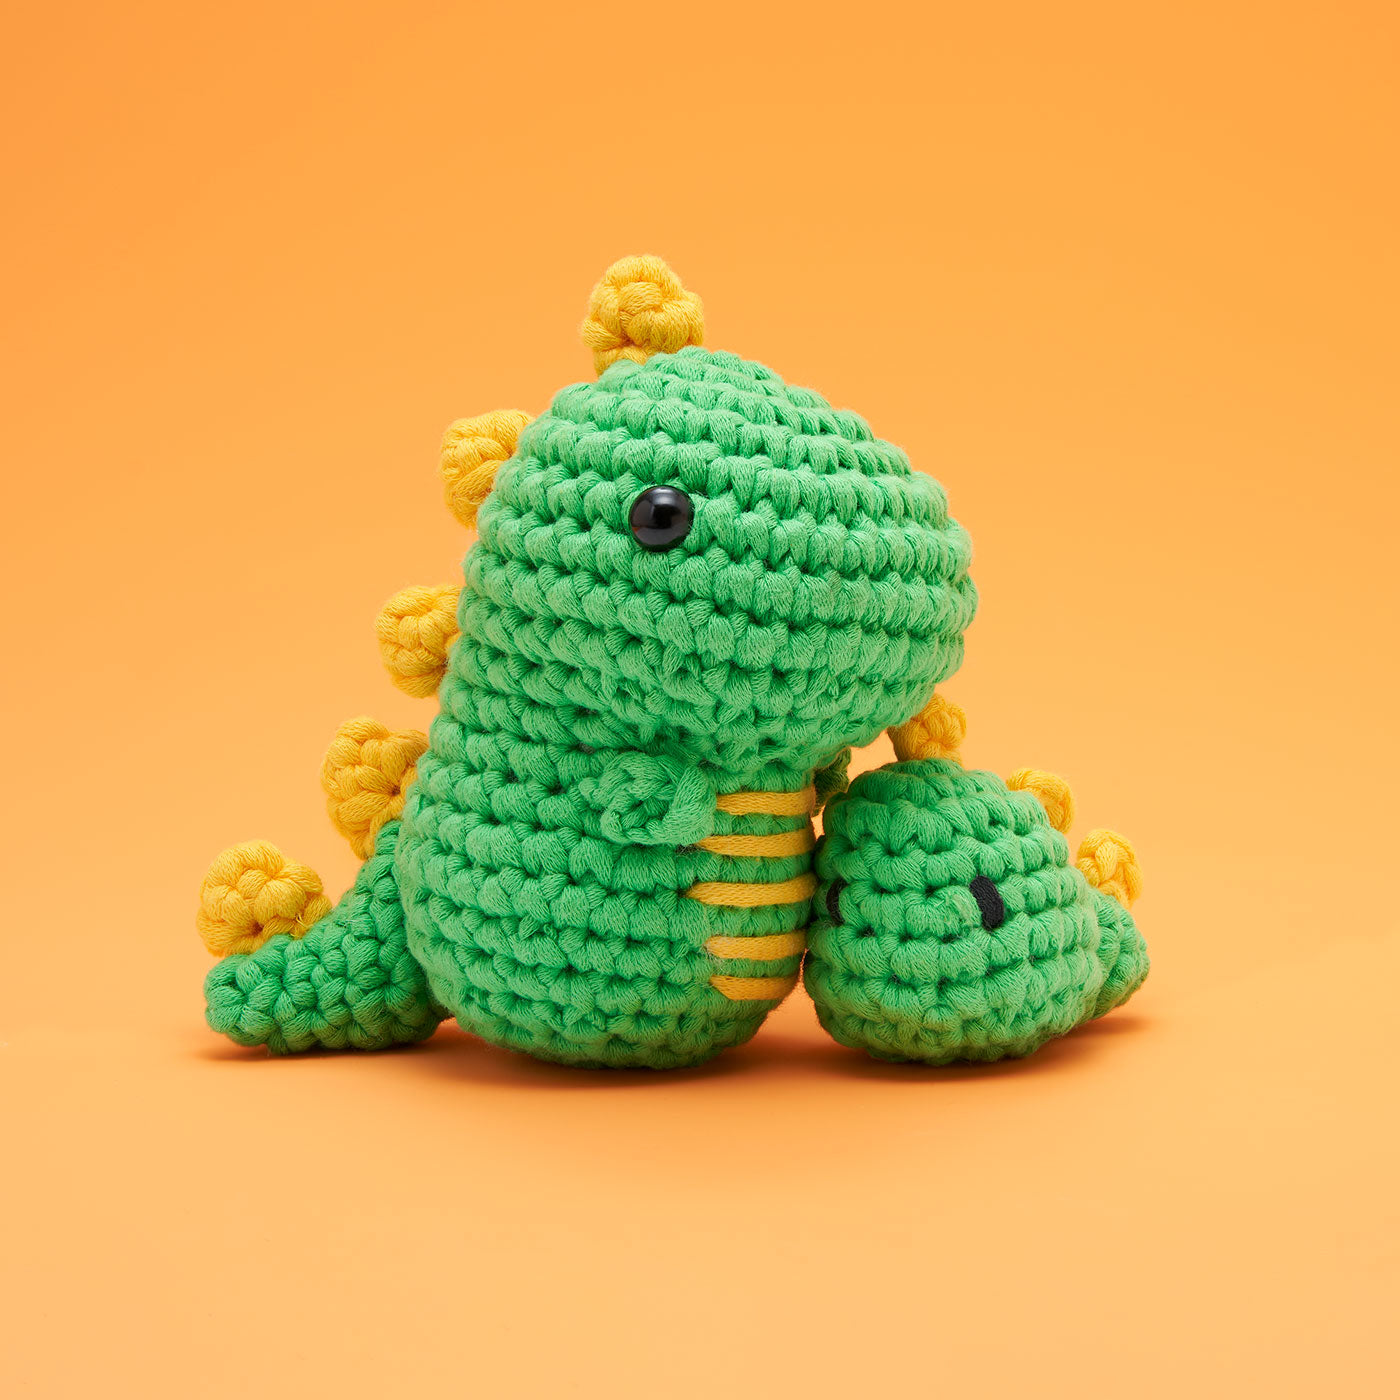 Themed Crochet Kit Bundle – Dinosaur + Cactus + Whale Beginner